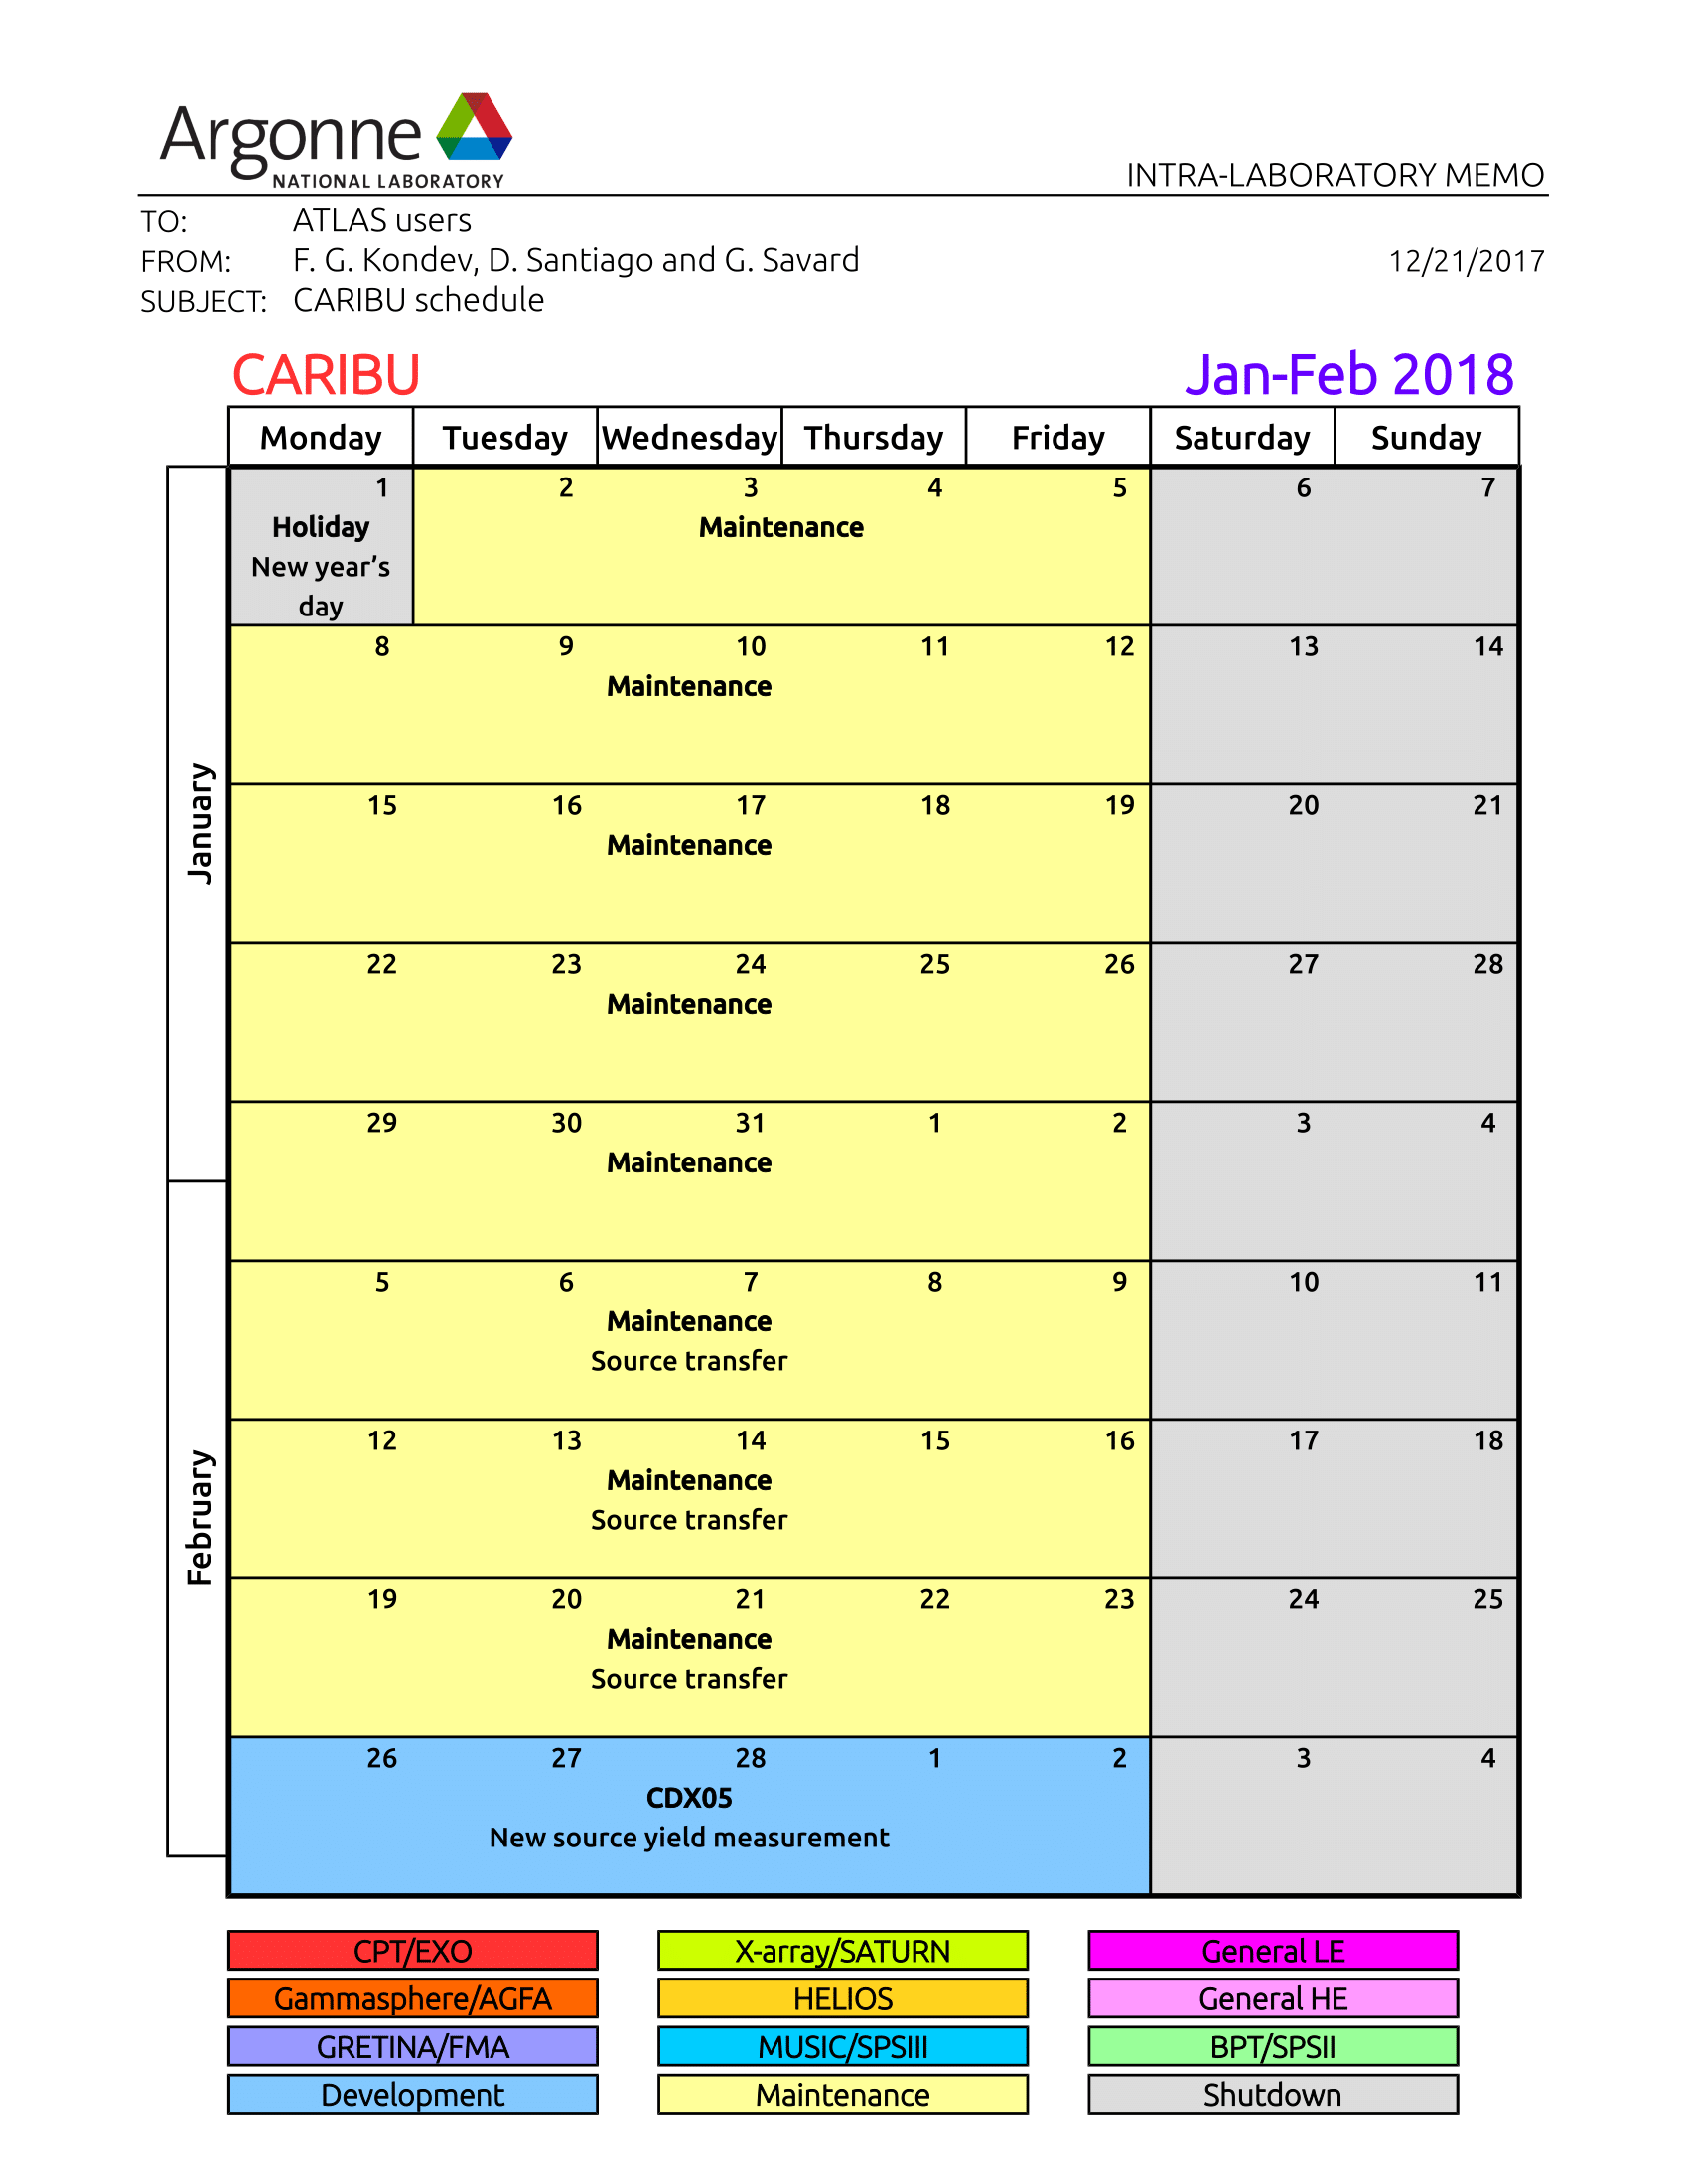 CARIBU Schedule